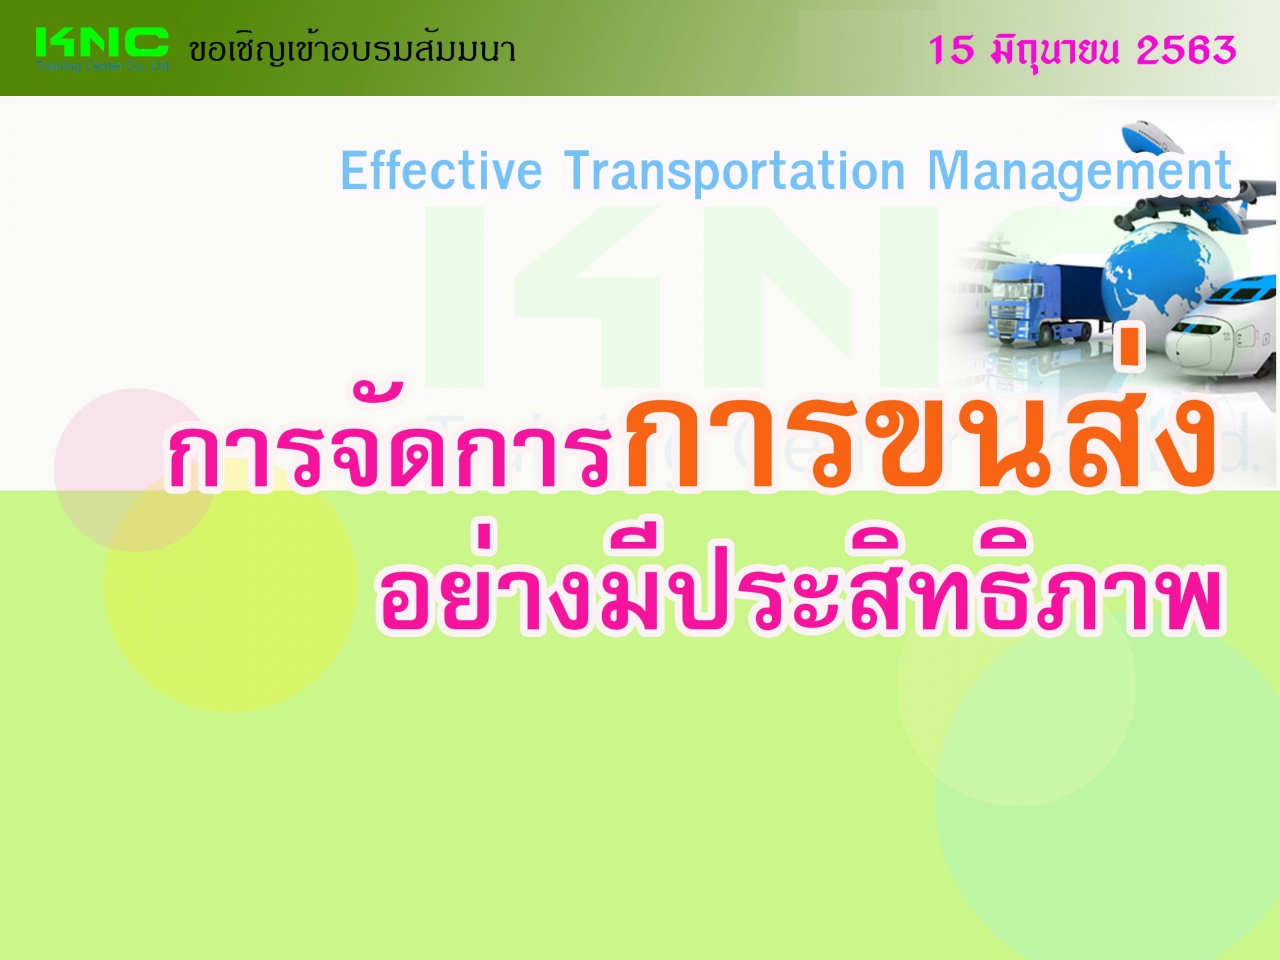 การจัดการการขนส่งอย่างมีประสิทธิภาพ (Effective Transportation Management)